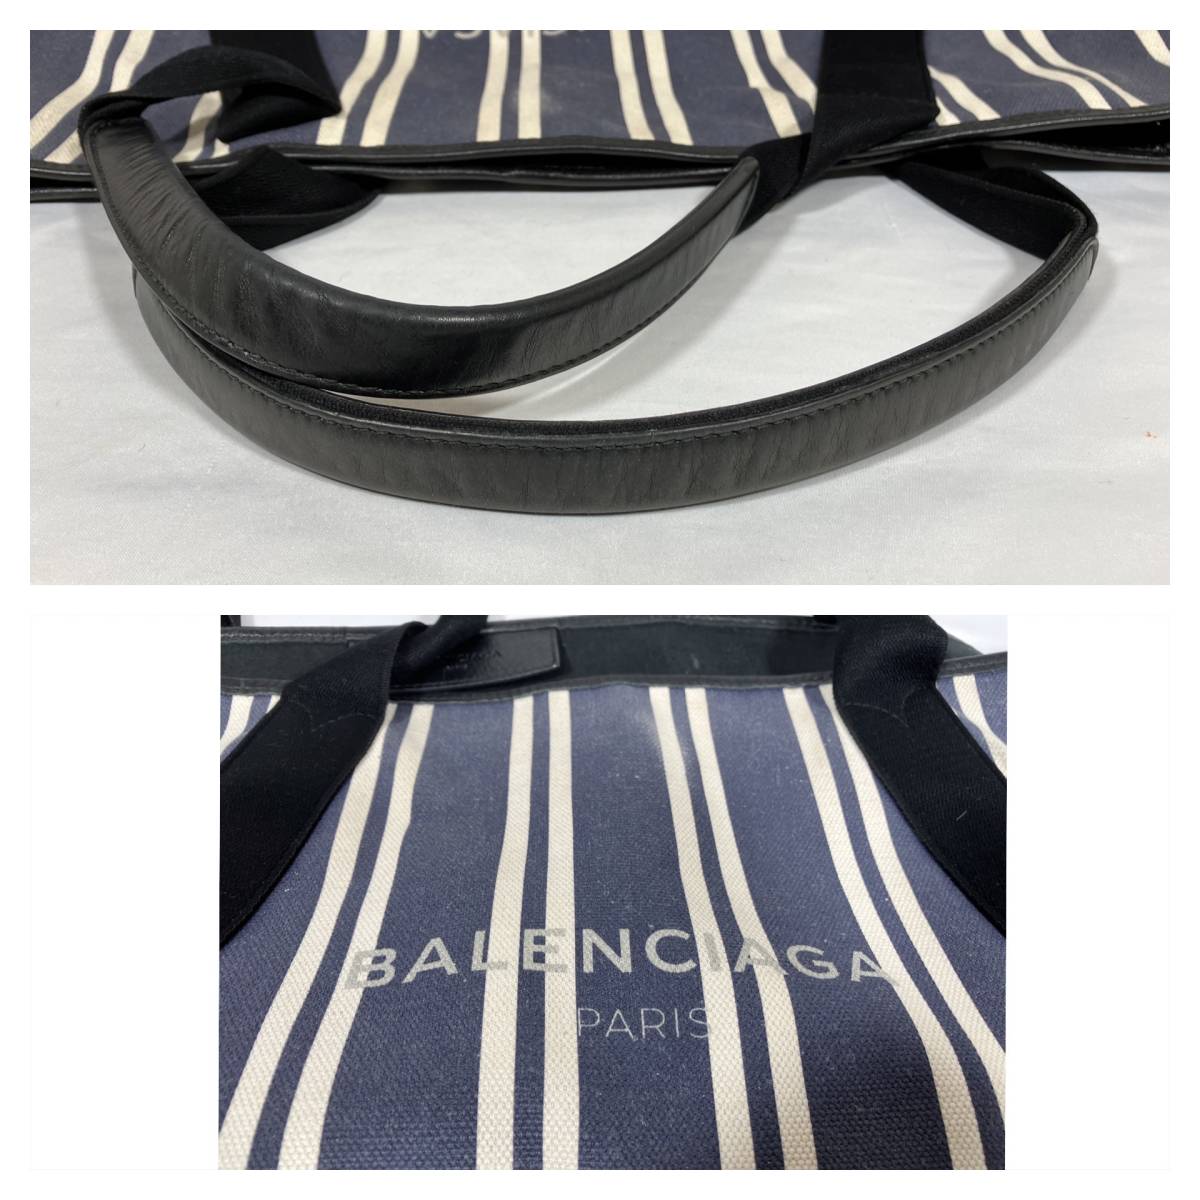 5D0202[ подлинный товар гарантия ] Balenciaga темно-синий бегемот M плечо большая сумка полоса парусина кожа сумка имеется Logo BALENCIAGA